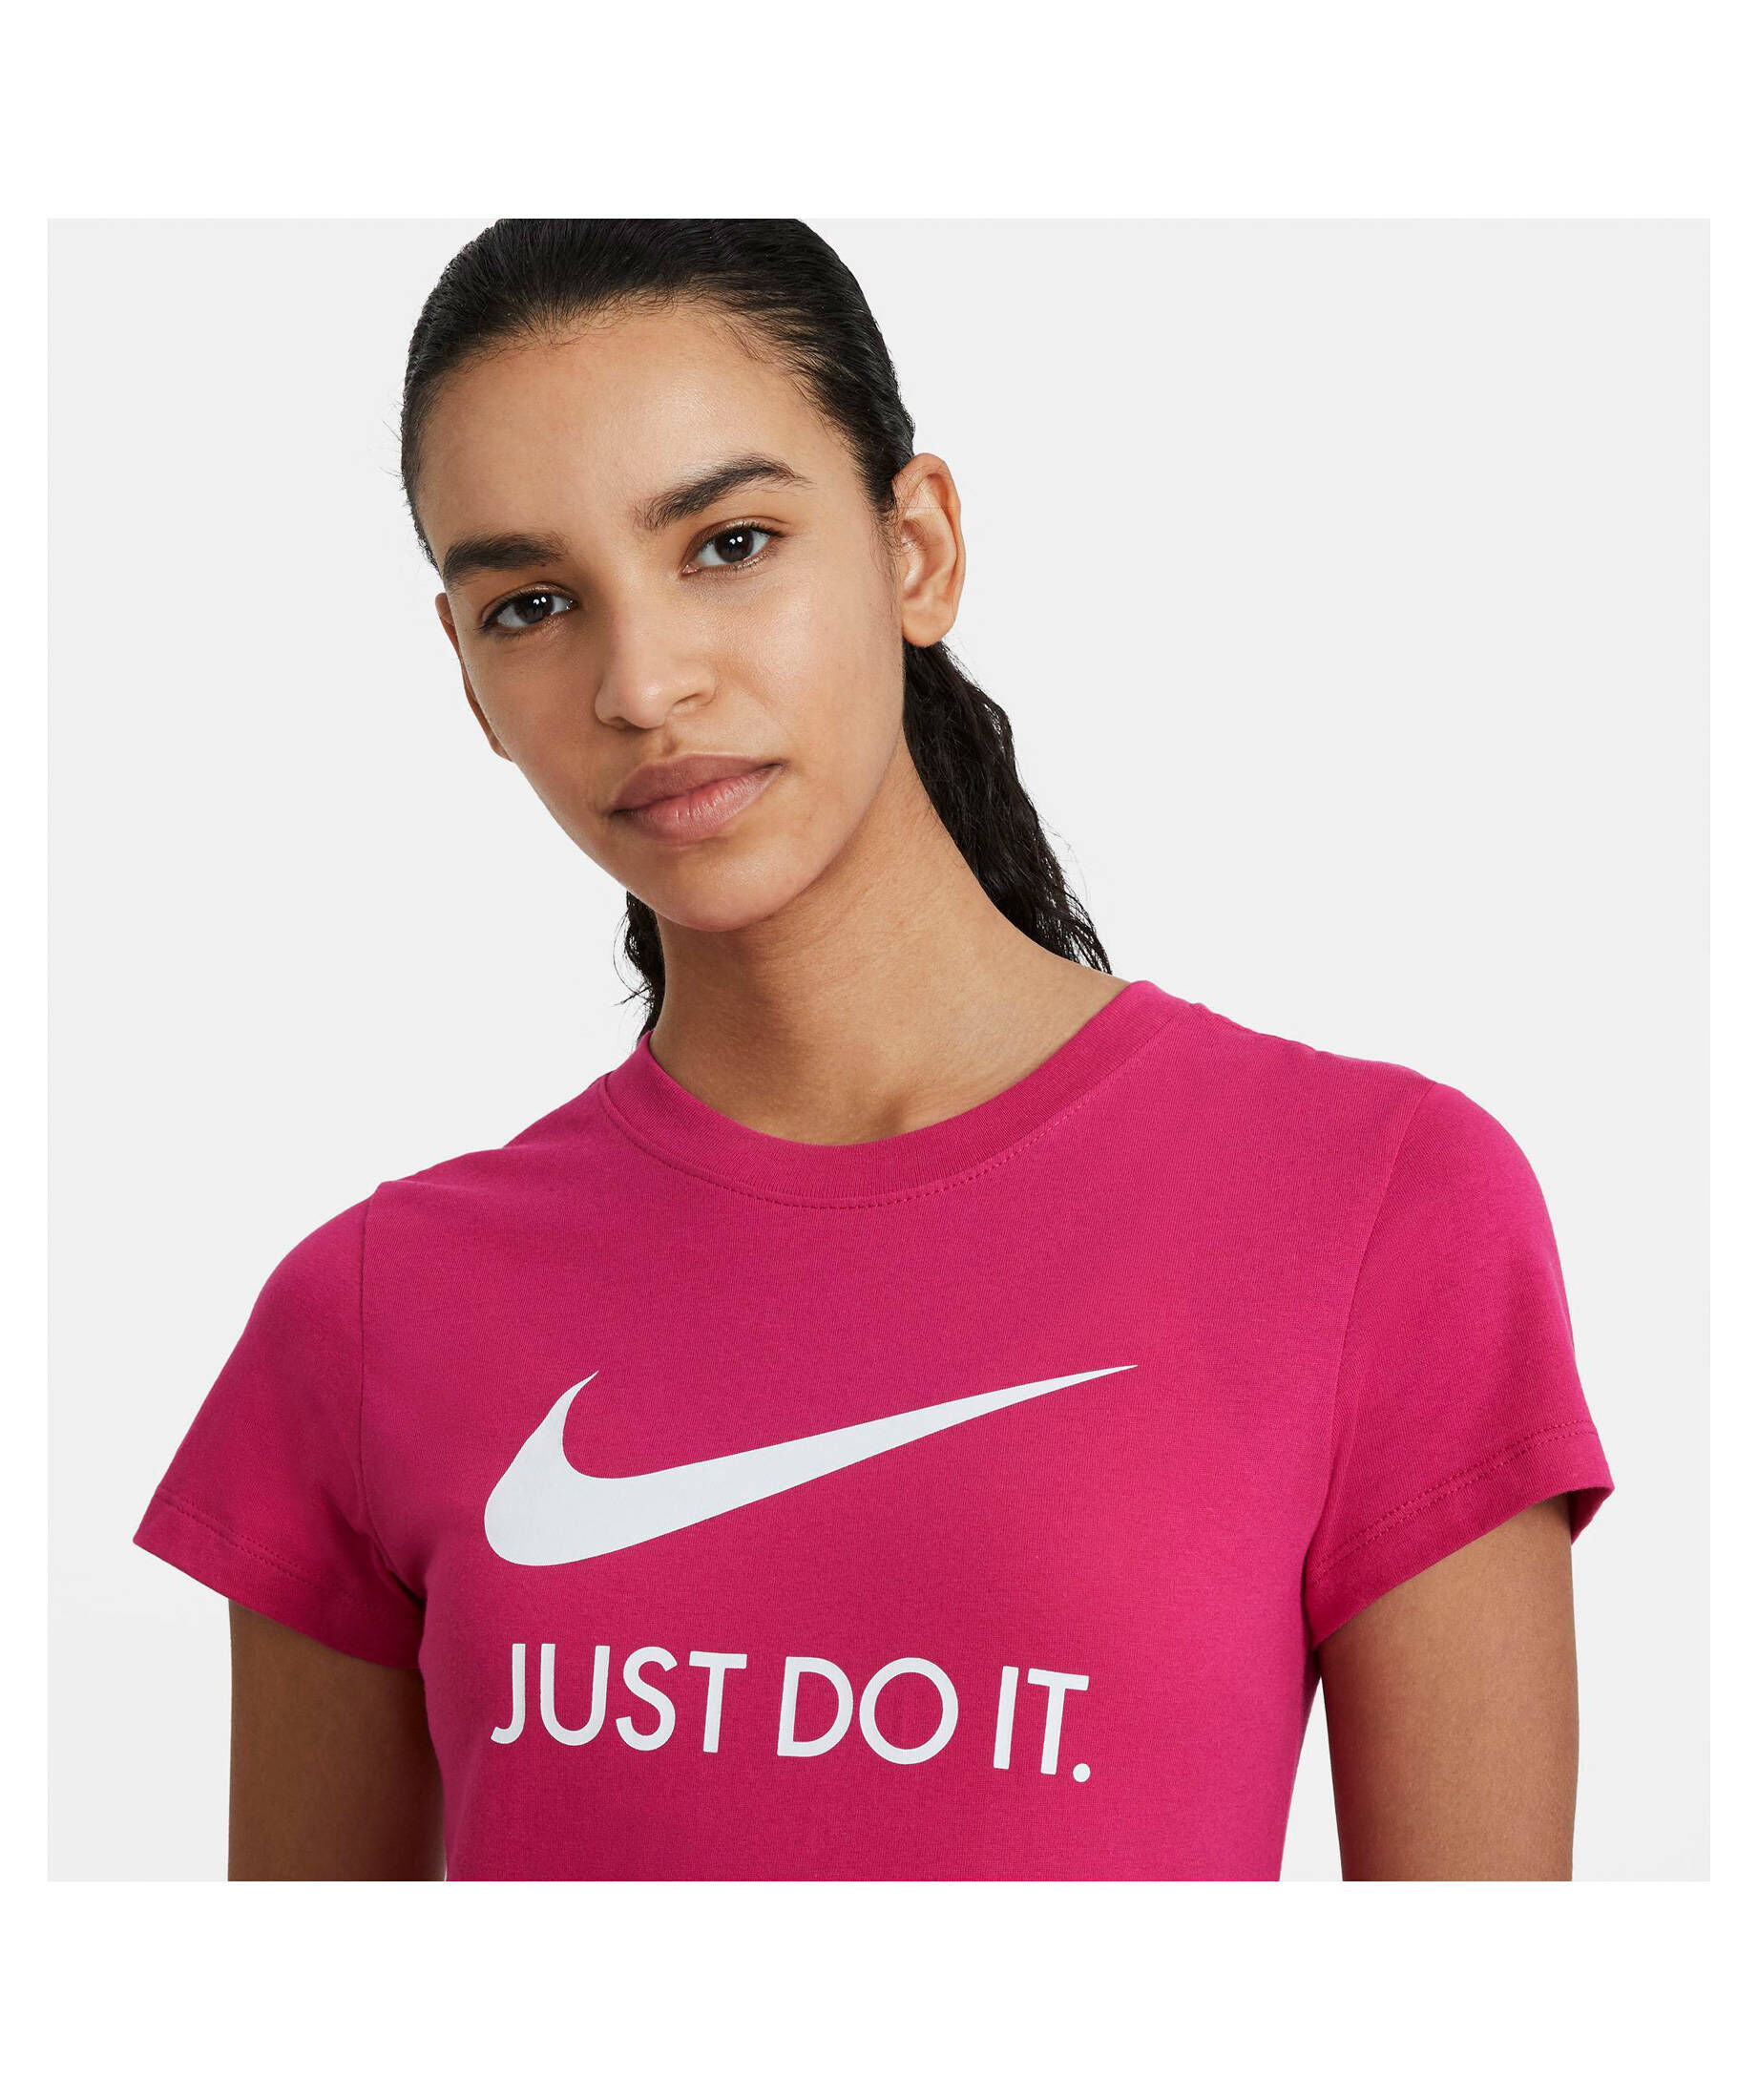 Nike Damen T-Shirt kaufen engelhorn